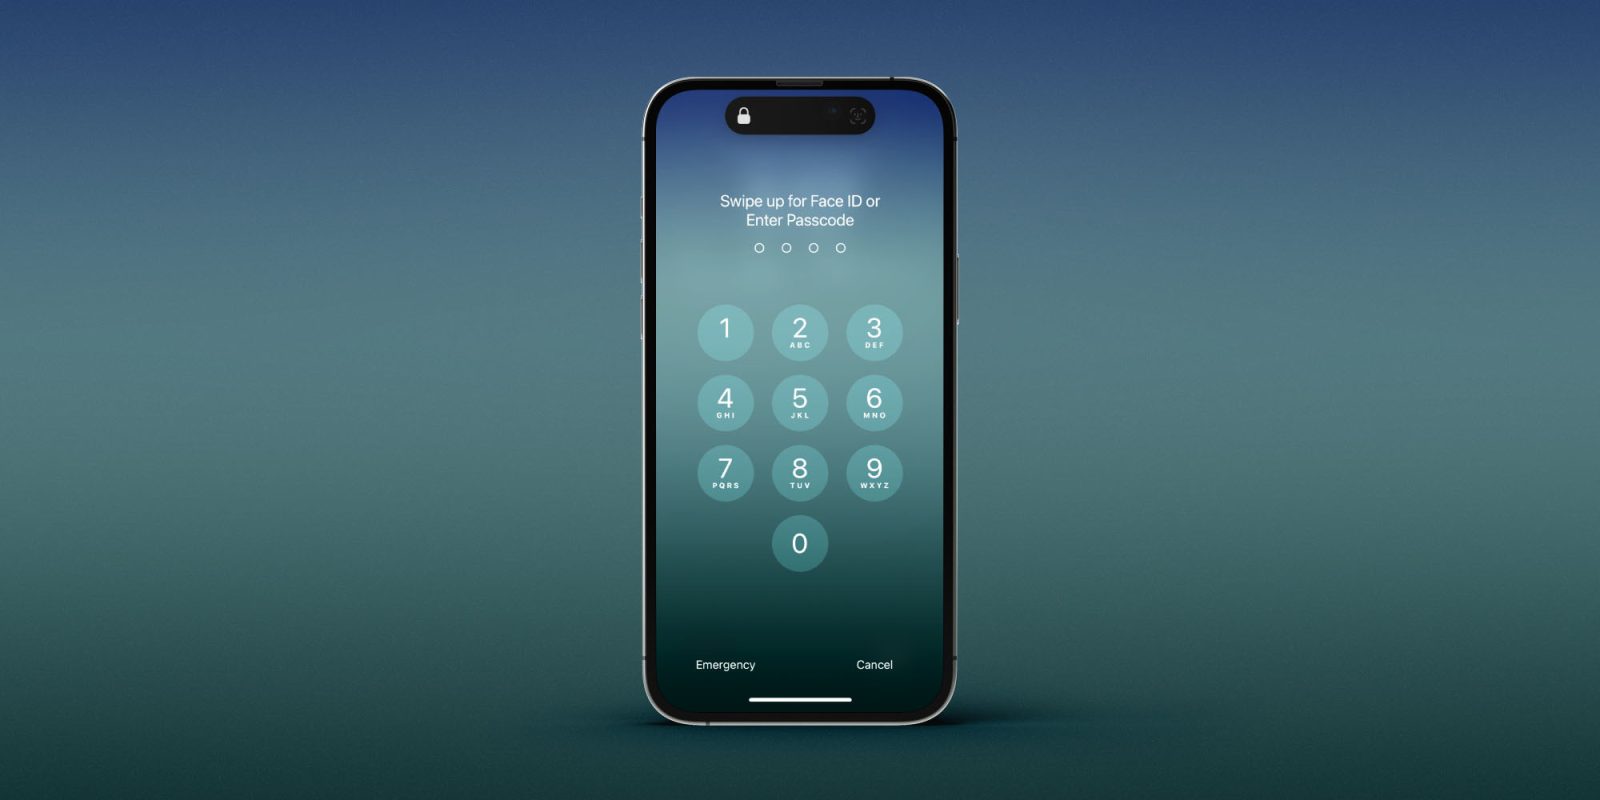 Πρόσφατες κλοπές iPhone υπογραμμίζουν τον κίνδυνο χρήσης κωδικών πρόσβασης σε δημόσιους χώρους